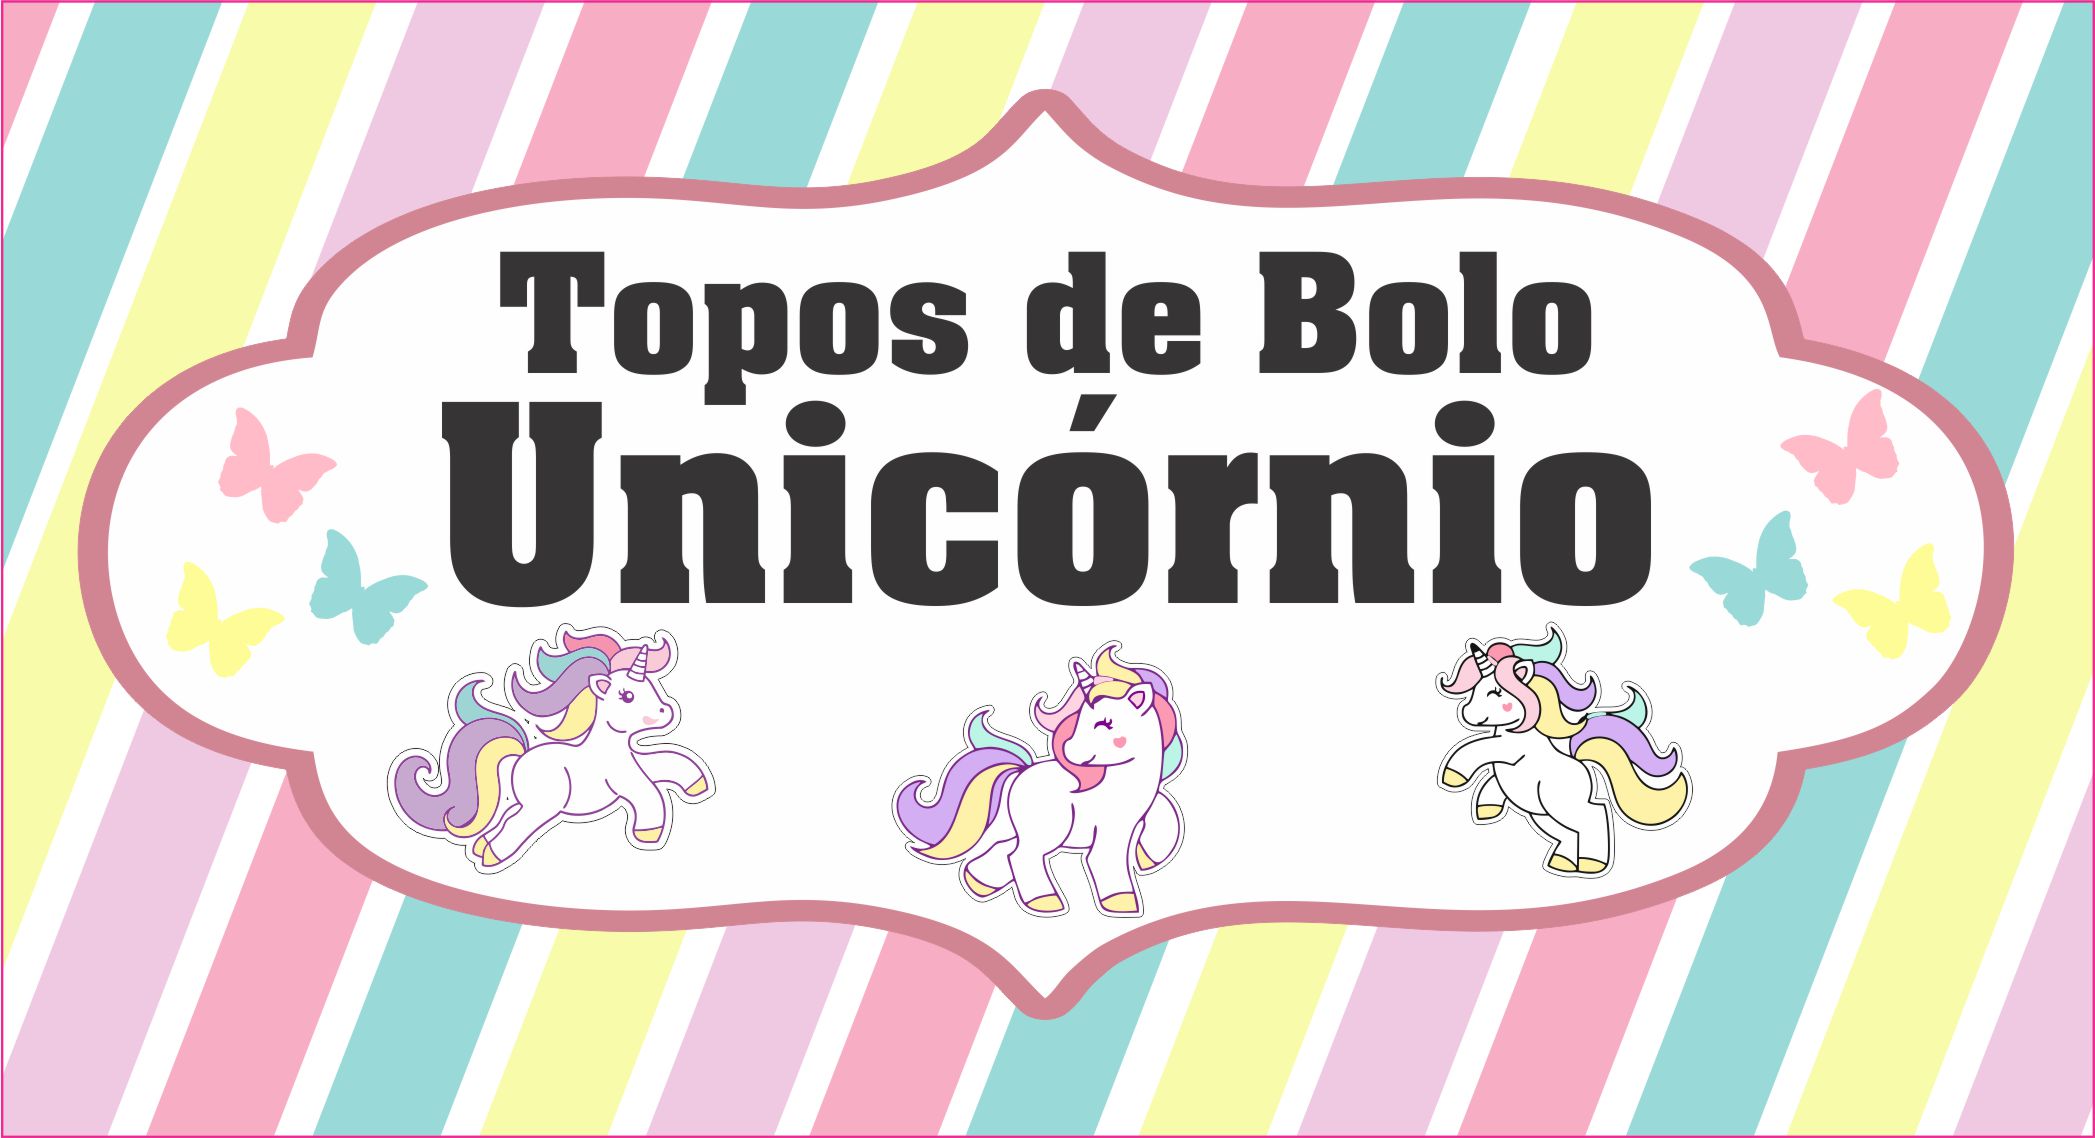 TOPO DE BOLO UNICORNIO CAPA - Topo de Bolo Unicornio – Diversos modelos gratuitos para você